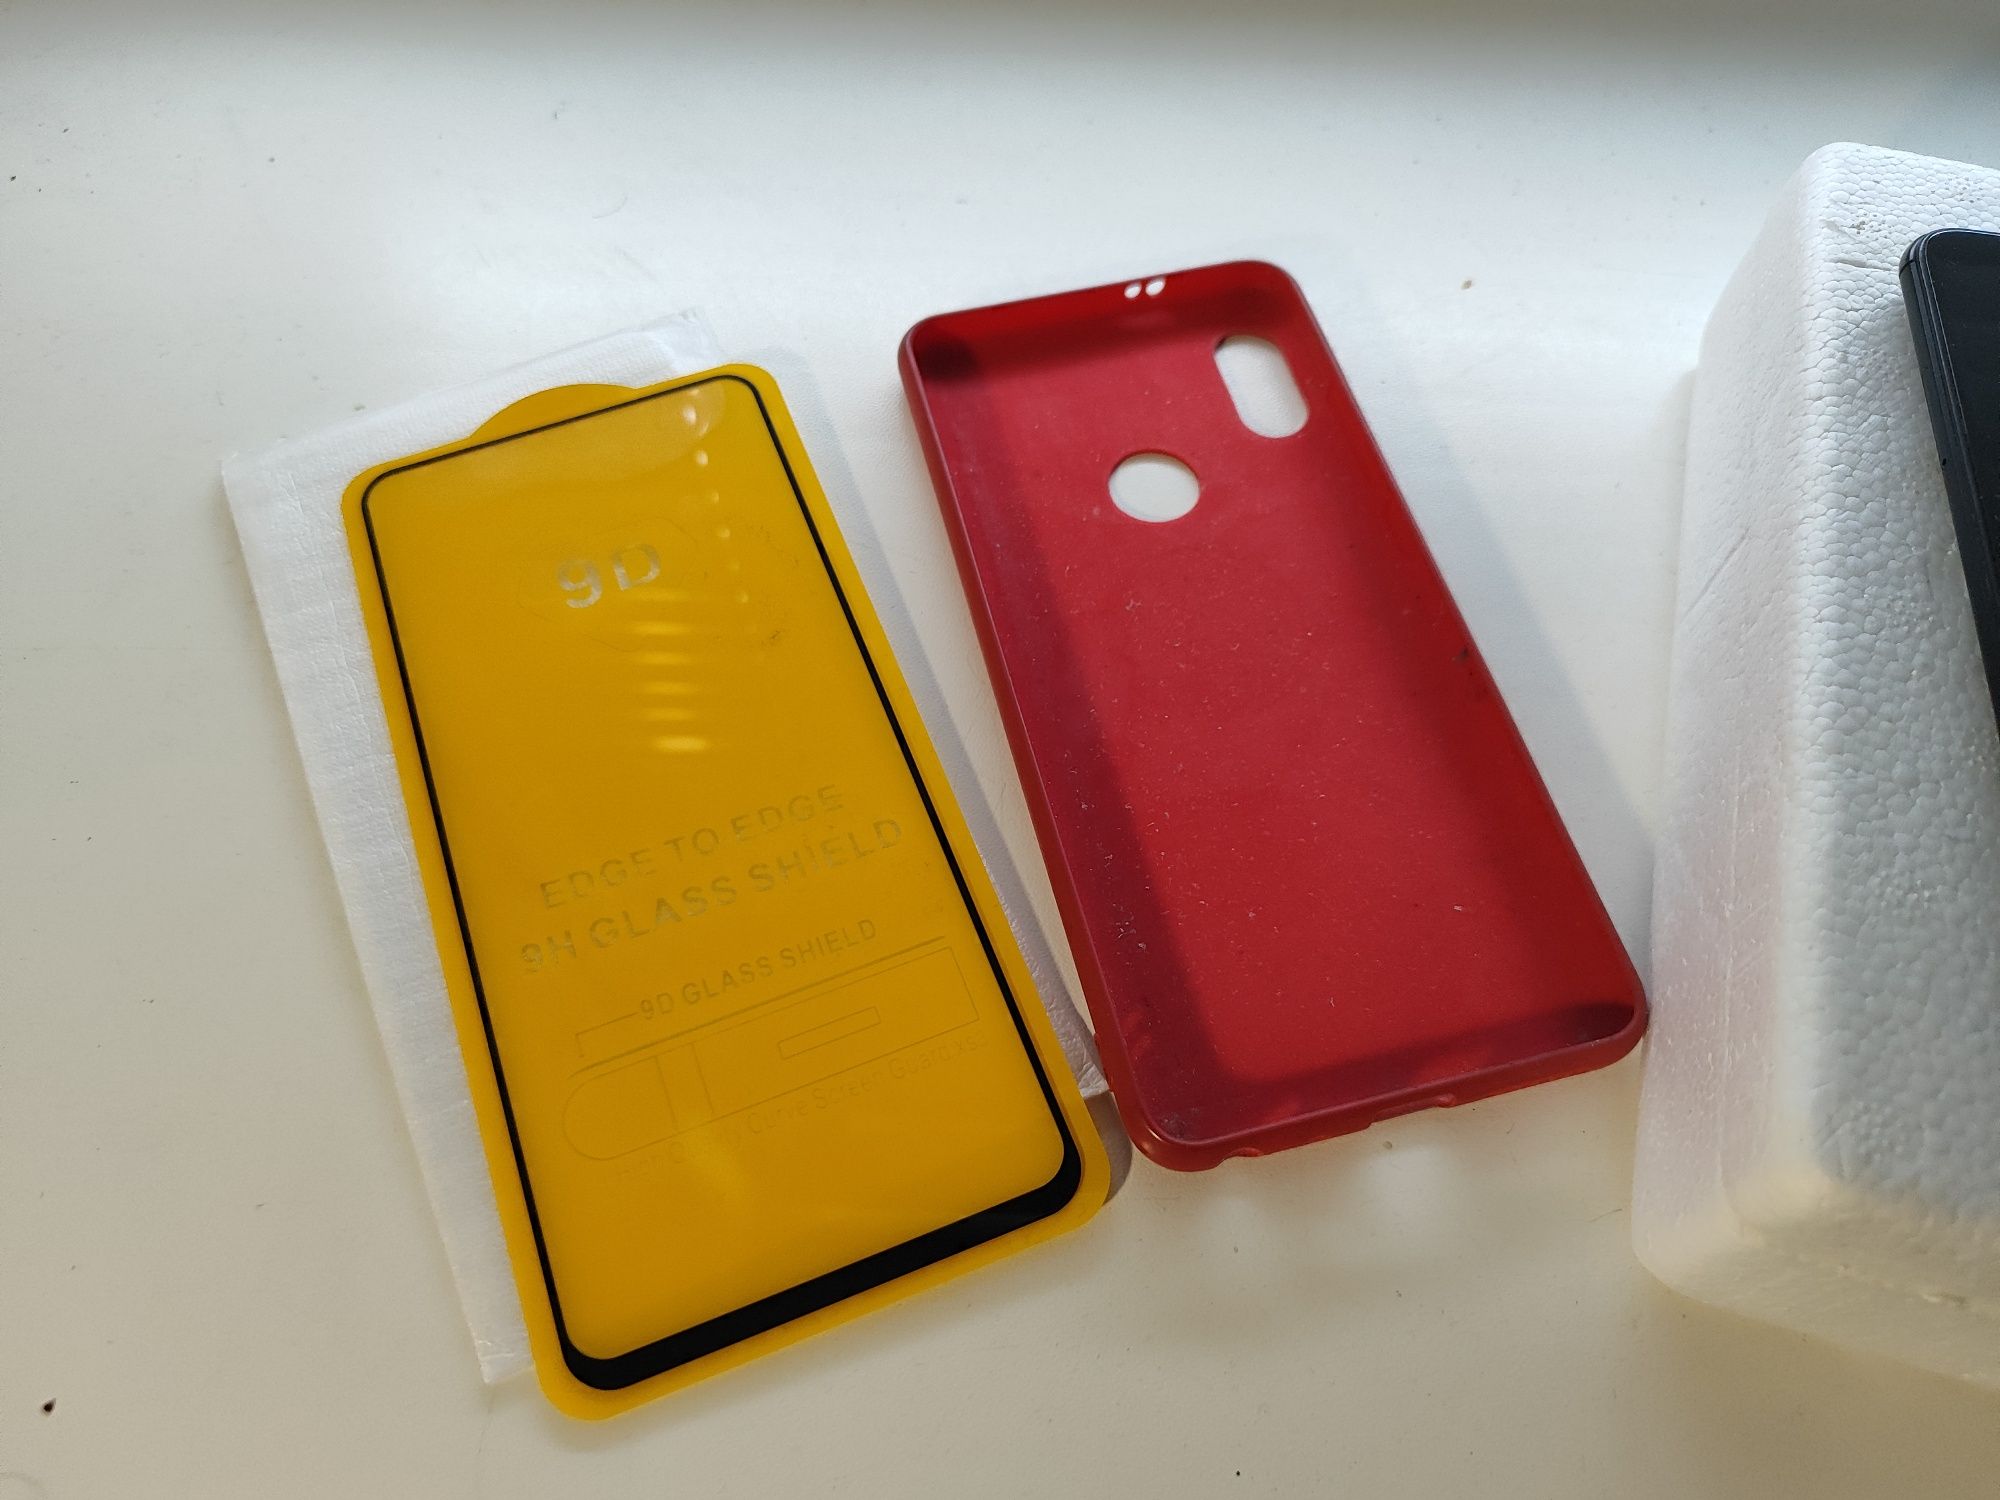 Xiaomi Redmi note 5 4/64